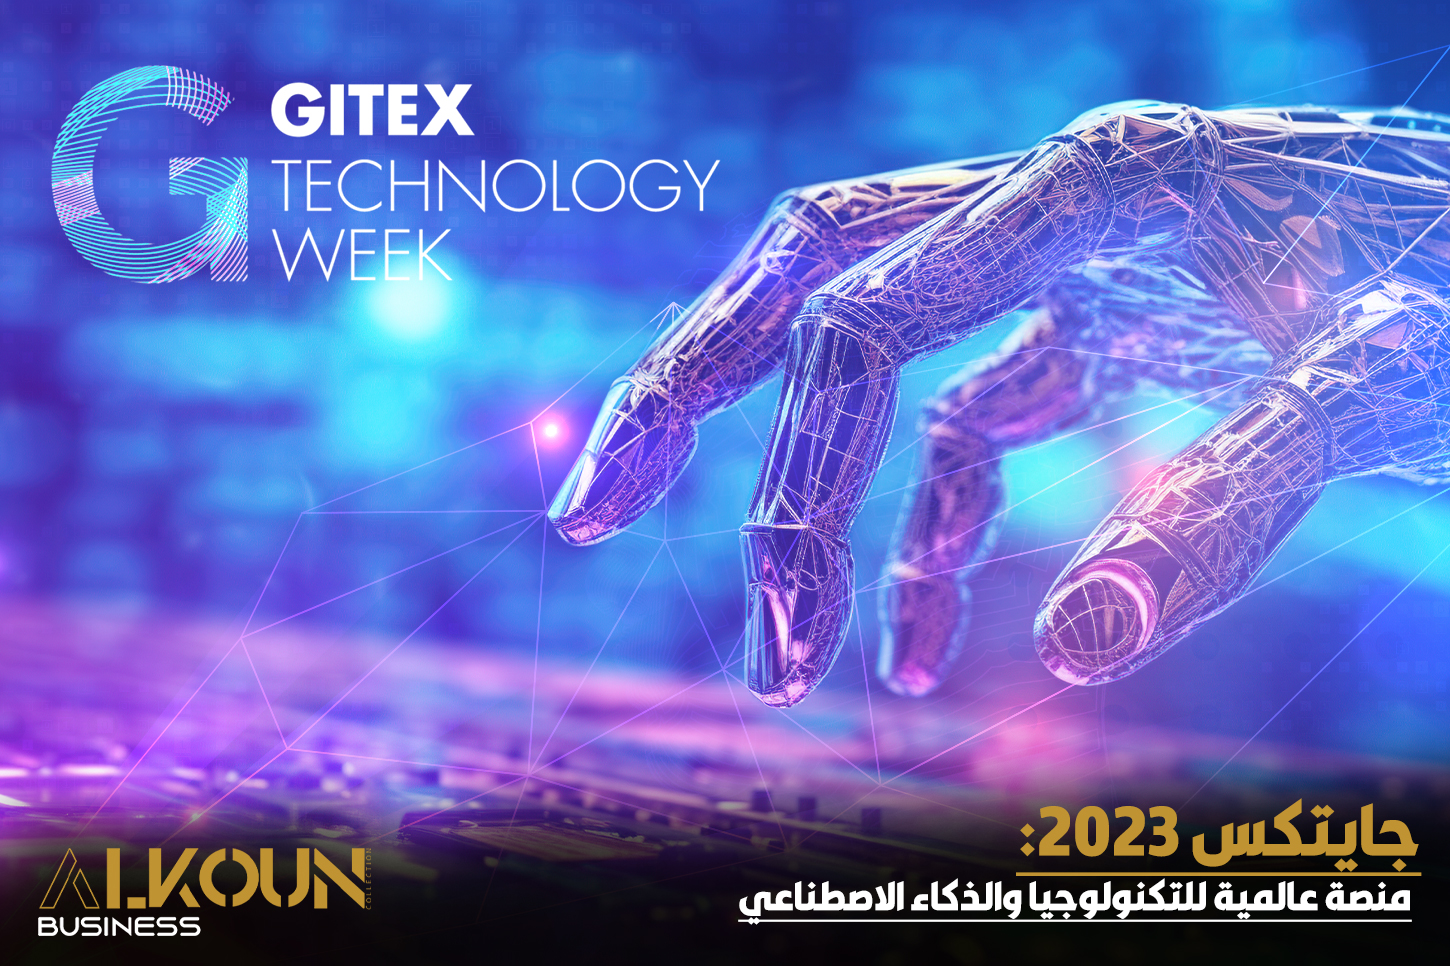 جايتكس 2023: منصة عالمية للتكنولوجيا والذكاء الاصطناعي